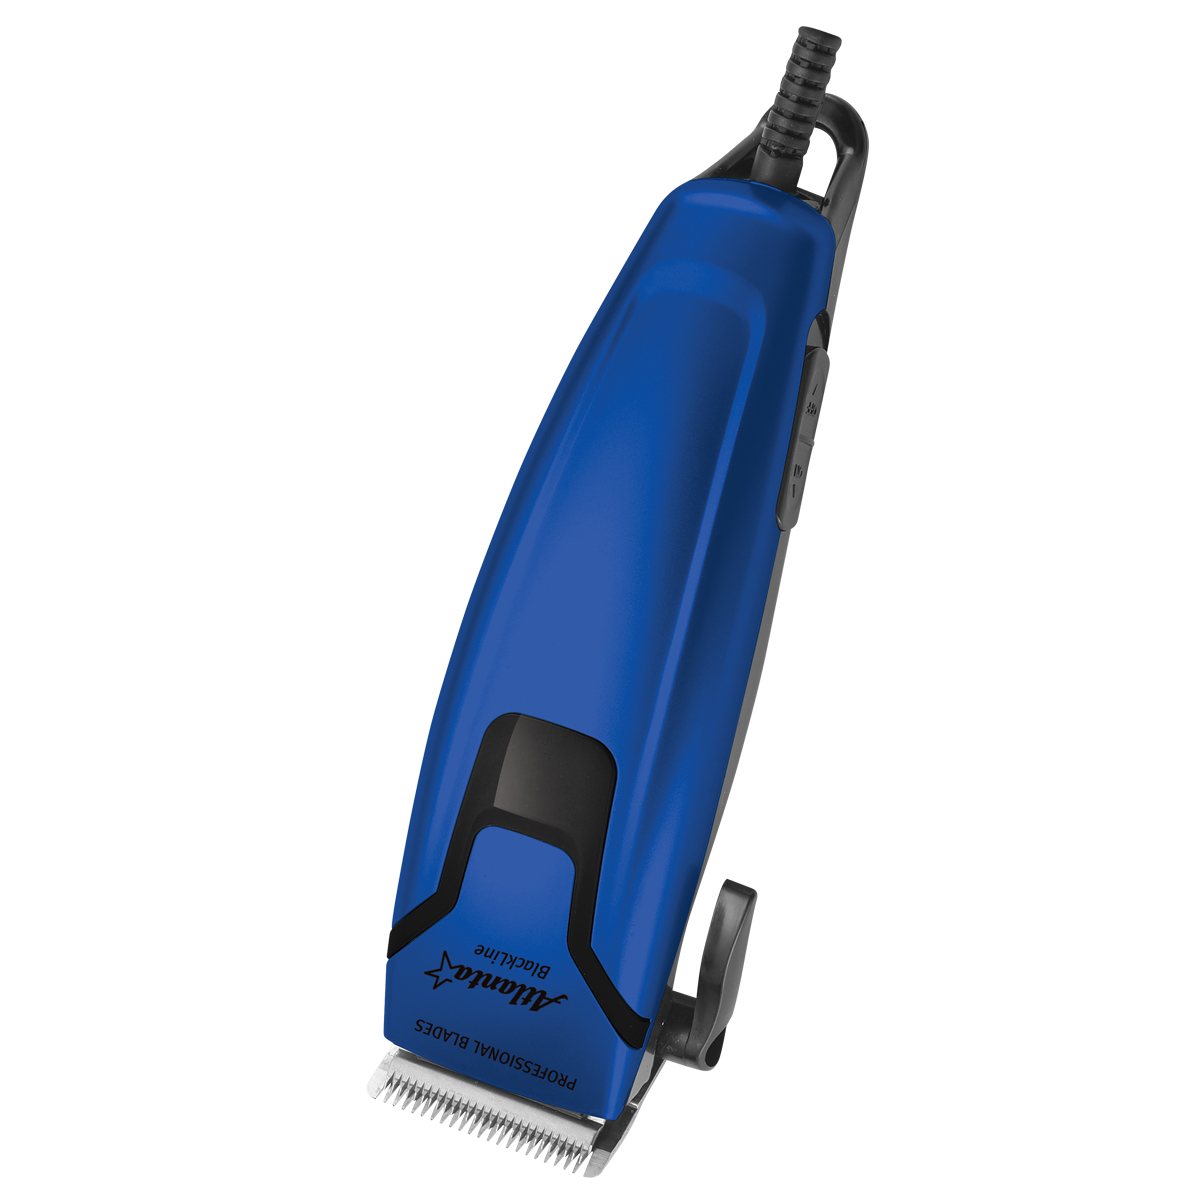 Машинка для стрижки волос Atlanta ATH-6897 Blue расчёска комфорт с зубьями разной длины нескользящая ручка 21 5 х 3 см розовая